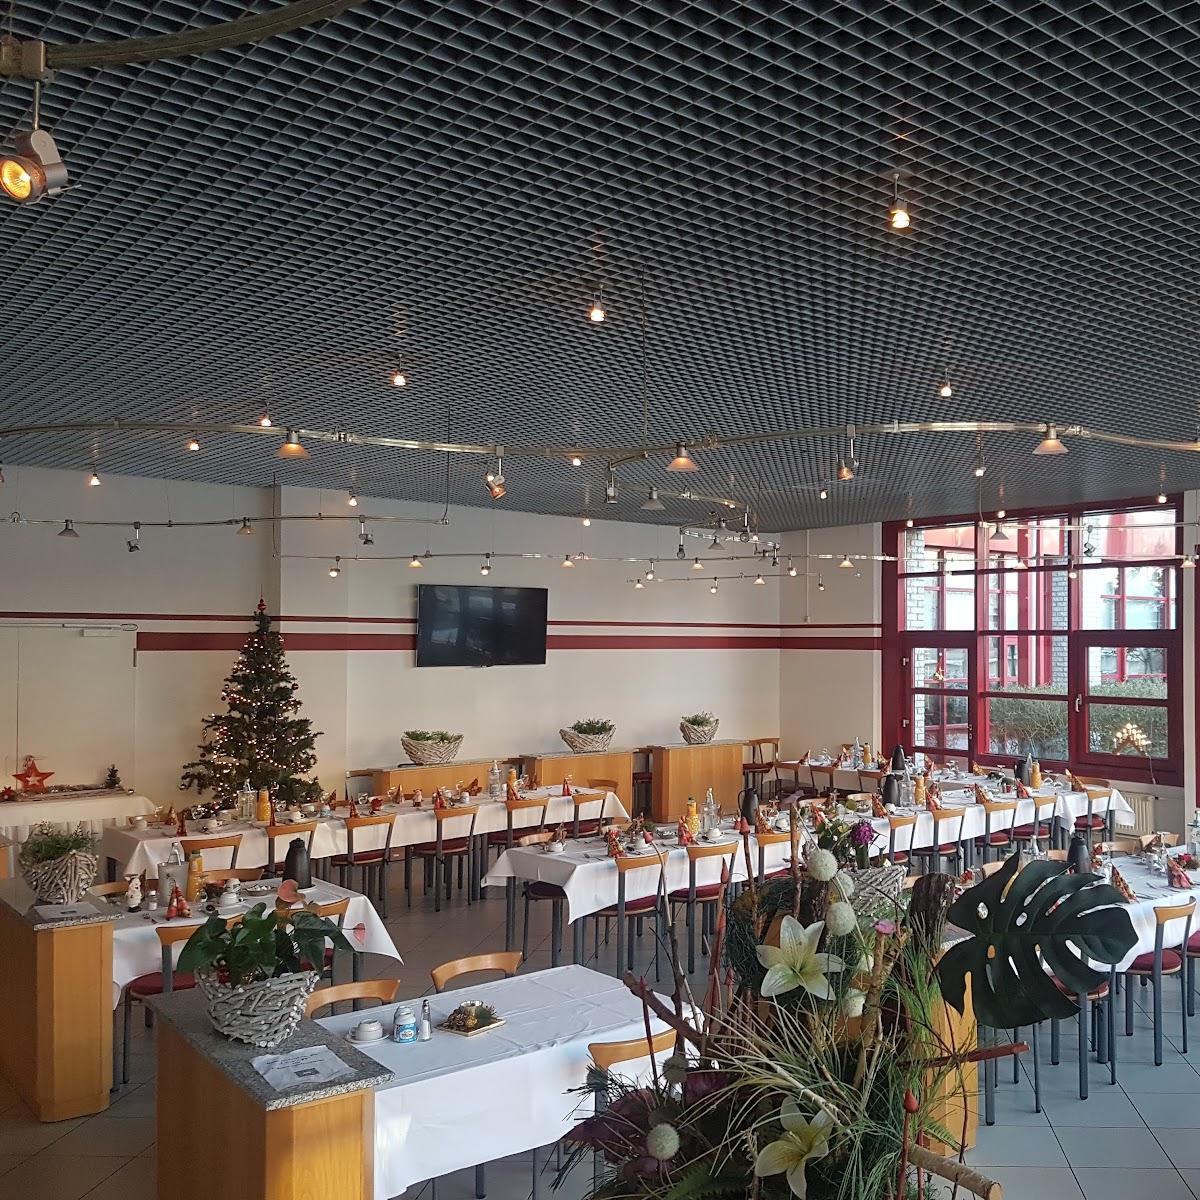 Restaurant "Restauration im IGZ" in Barleben